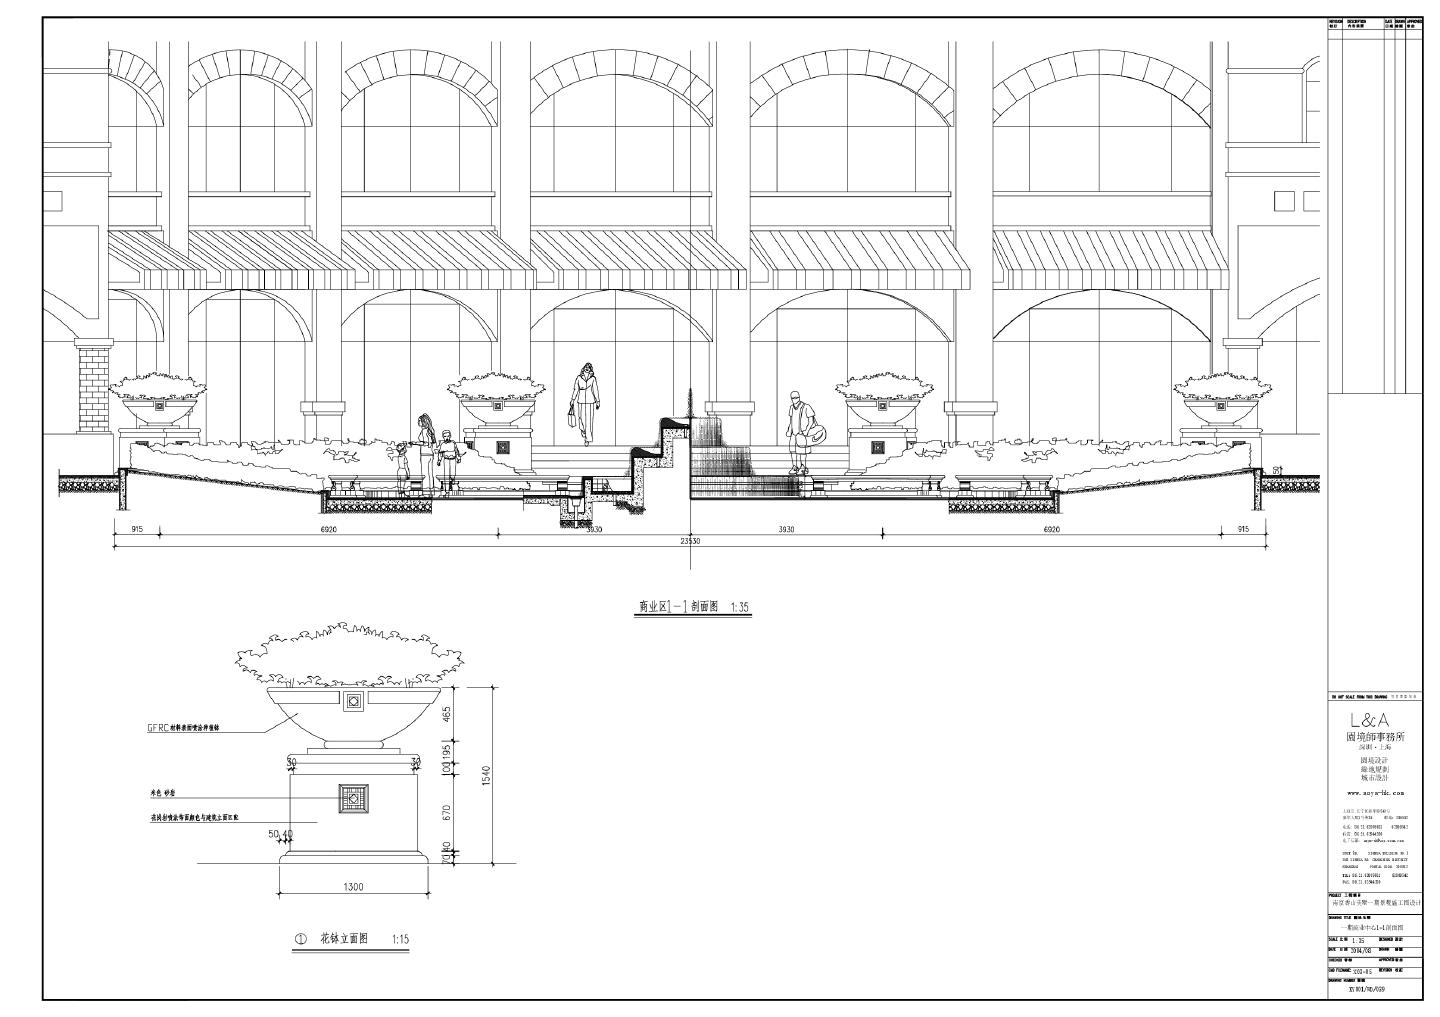 南京香山美墅一期景观施工图设计-商业区-C区X0.3-05商业中心剖面CAD图